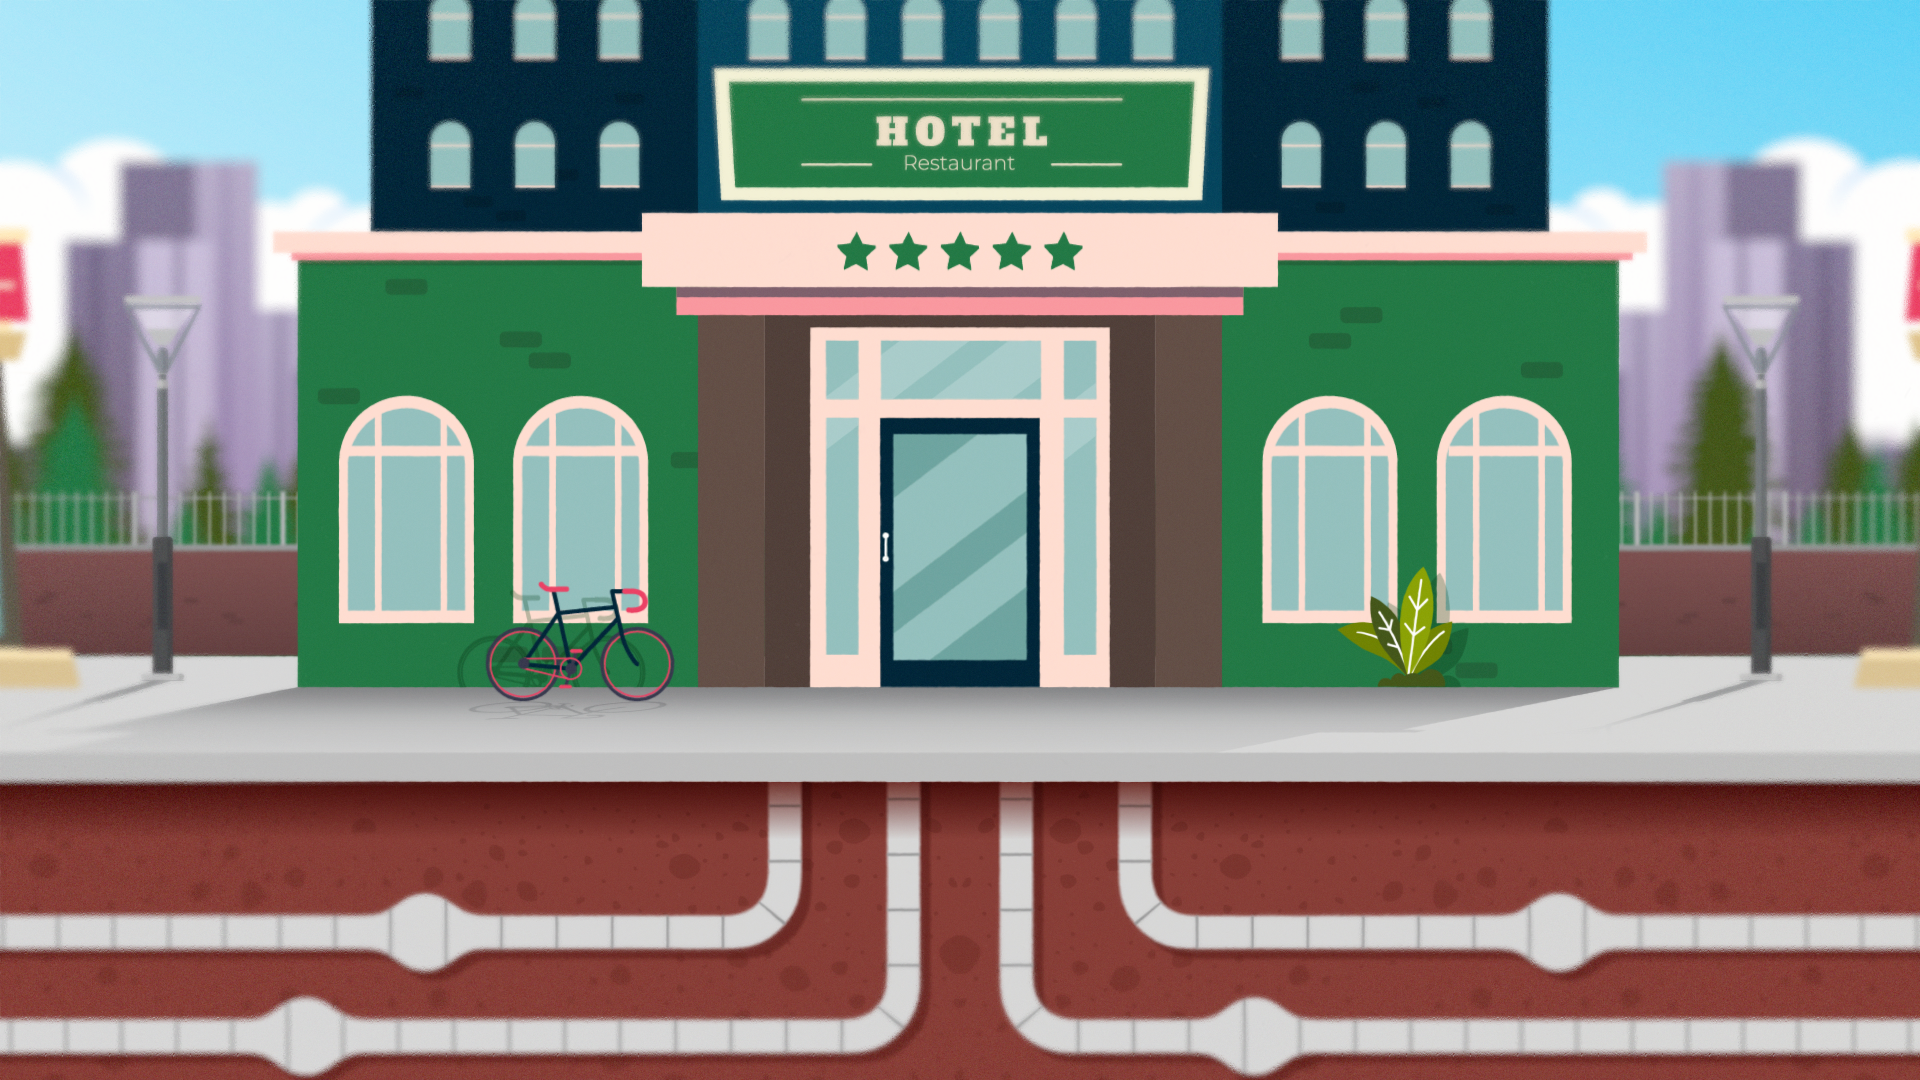 Animated hotel